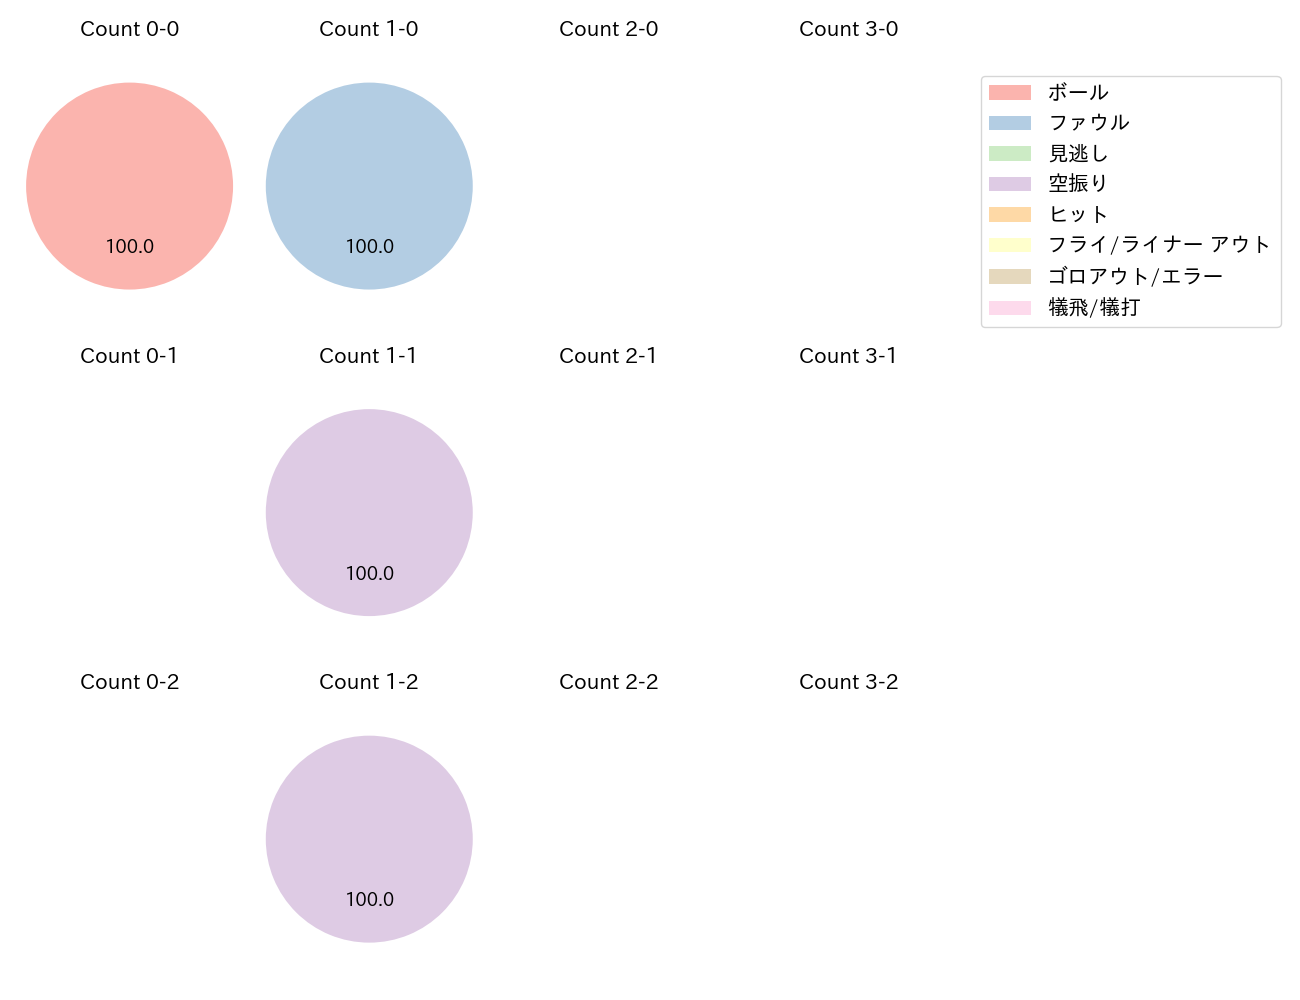 和田 康士朗の球数分布(2021年9月)